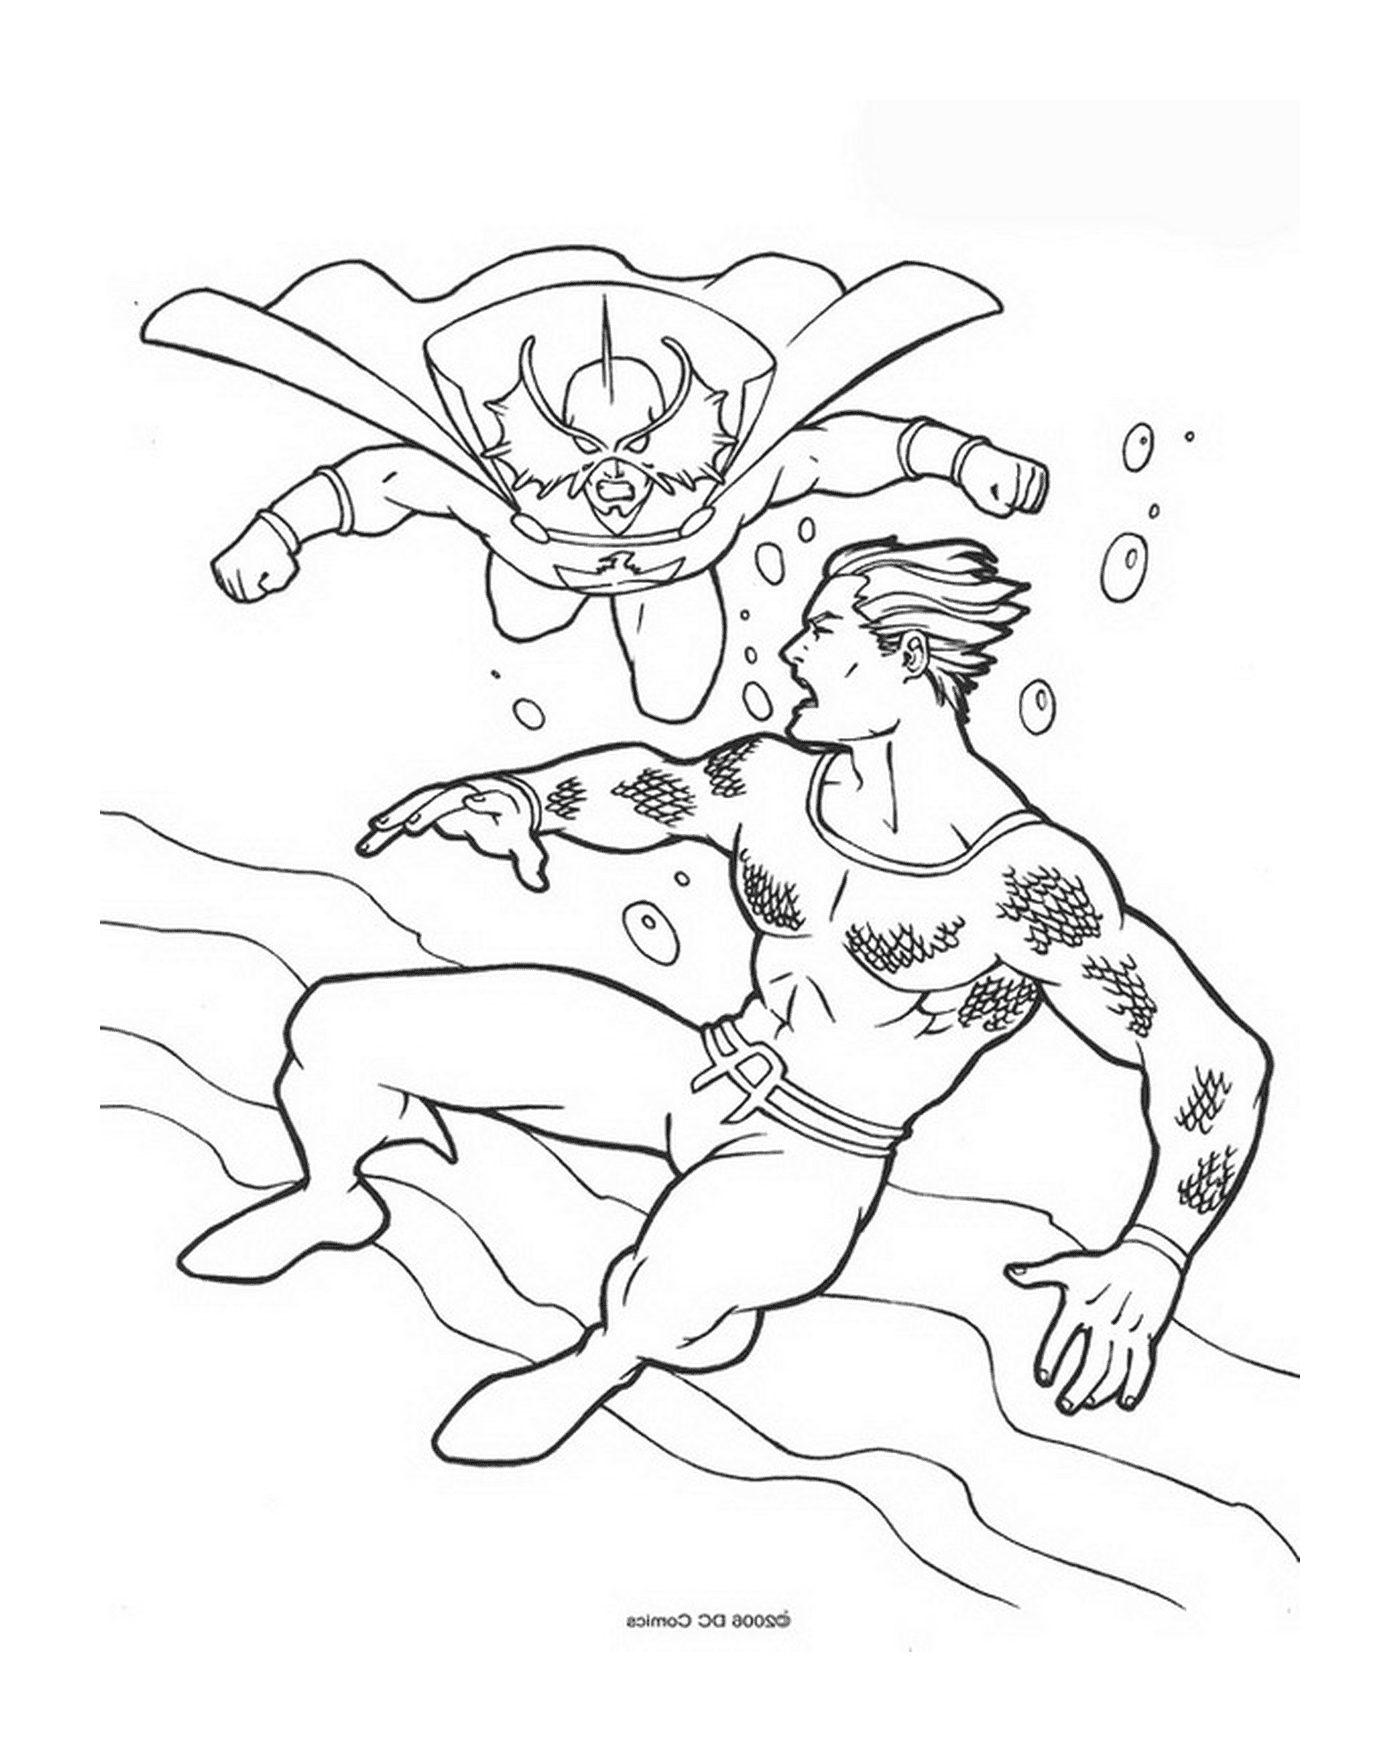   Image d'un homme plongeant dans l'eau 